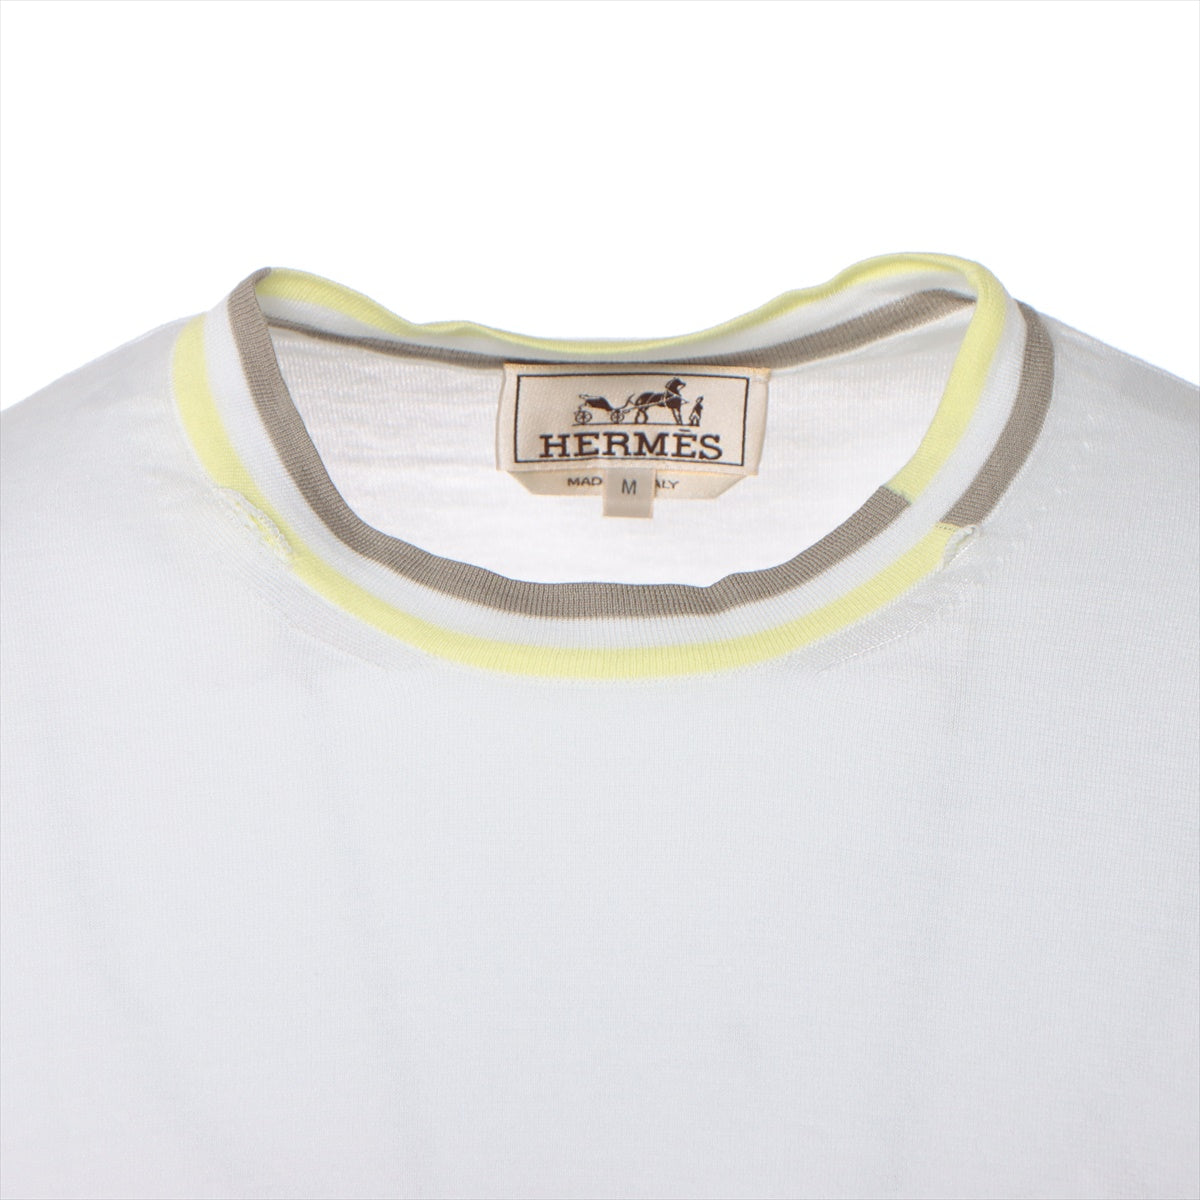 Hermès Cotton Short Sleeve Knitwear M Men's White